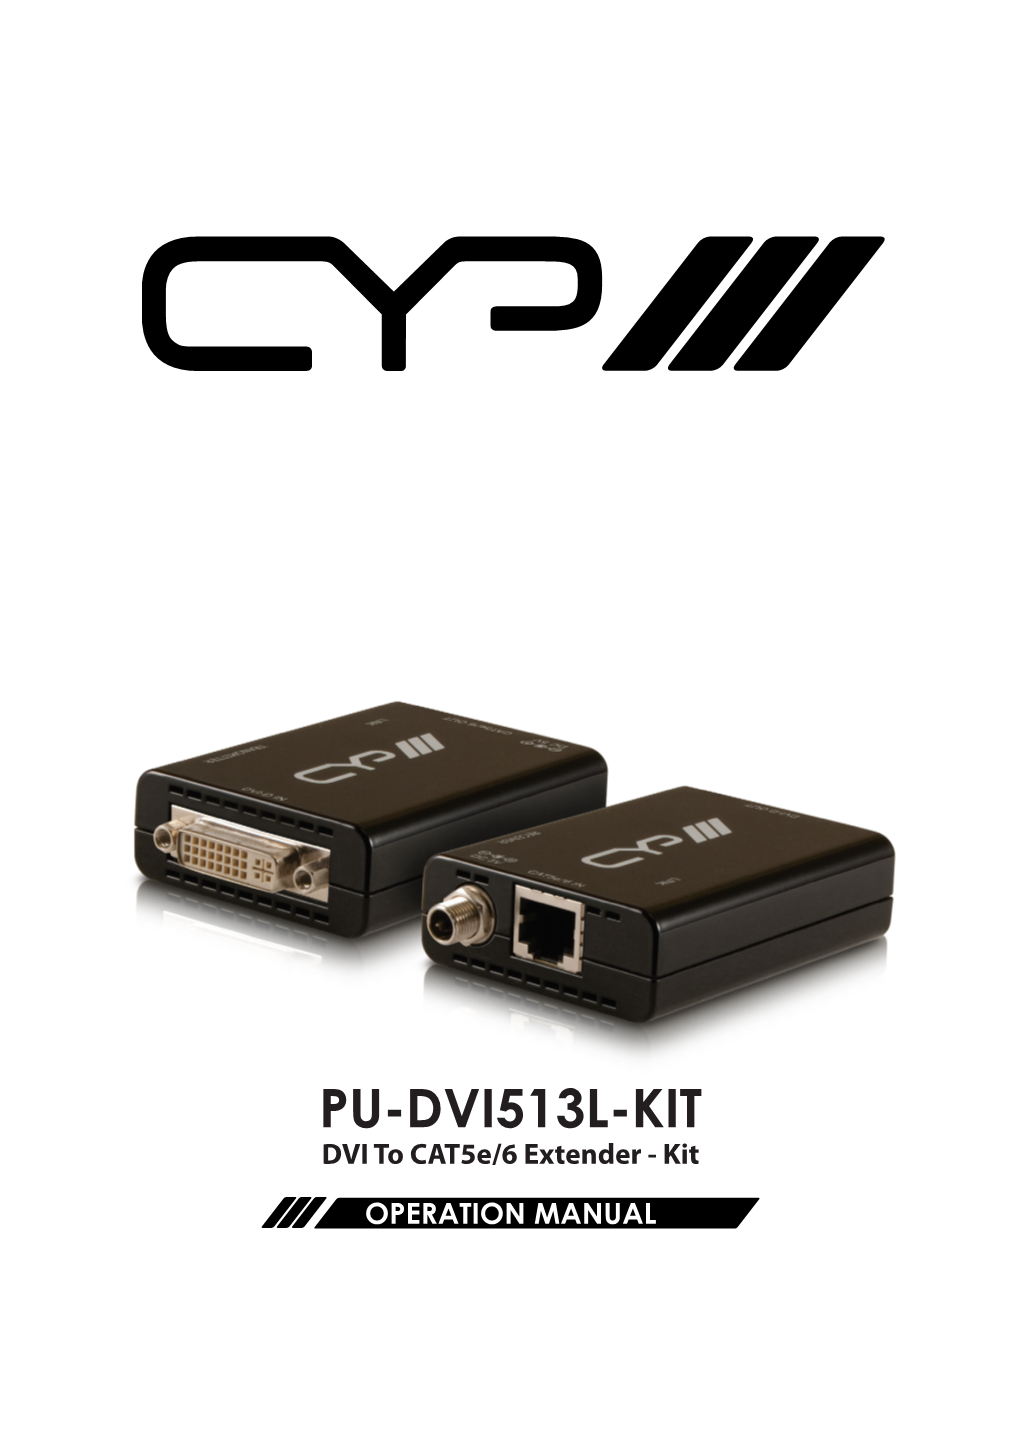 PU-DVI513L-KIT DVI to Cat5e/6 Extender - Kit